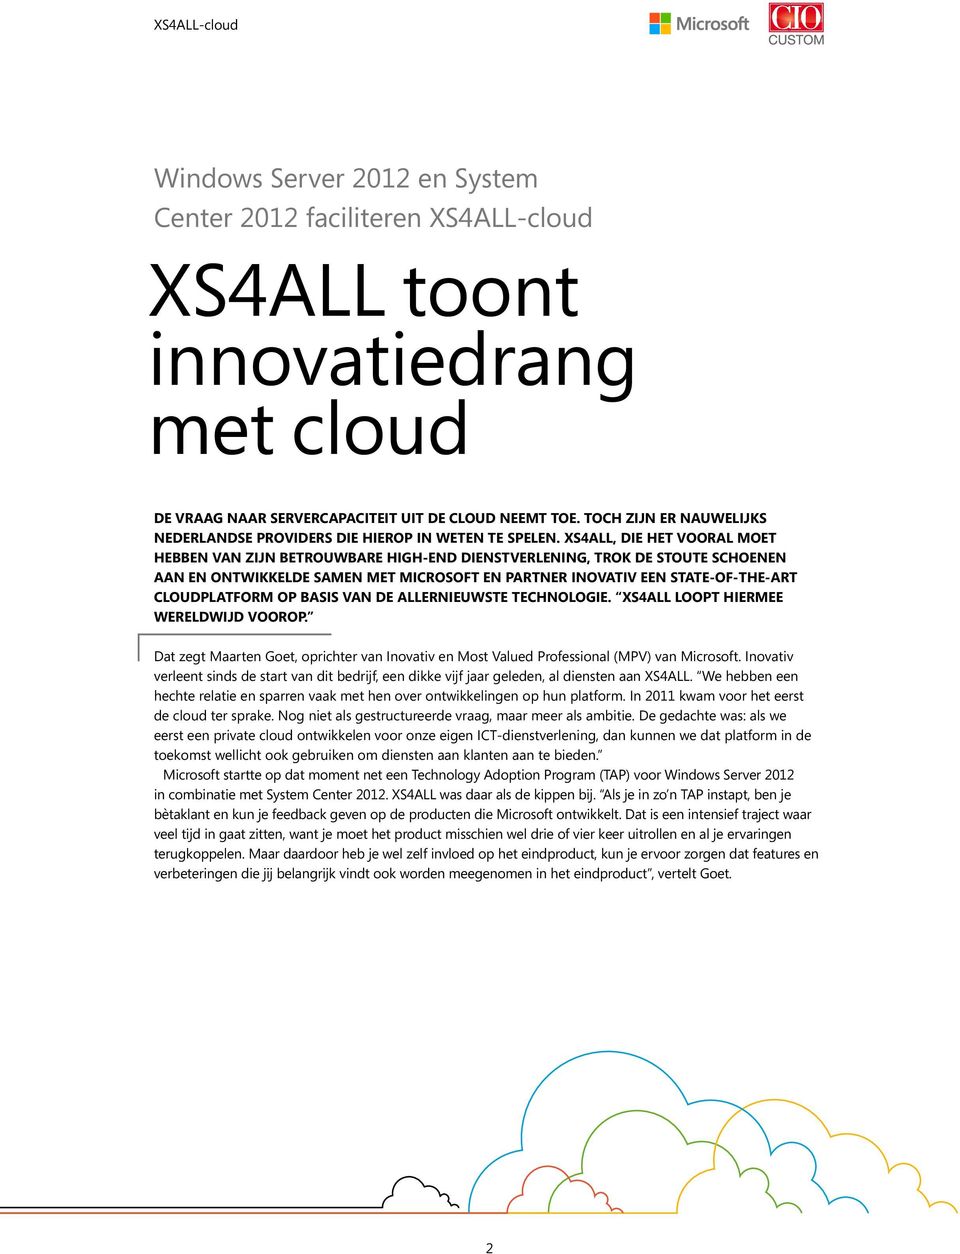 XS4ALL, die het vooral moet hebben van zijn betrouwbare high-end dienstverlening, trok de stoute schoenen aan en ontwikkelde samen met Microsoft en partner Inovativ een state-of-the-art cloudplatform